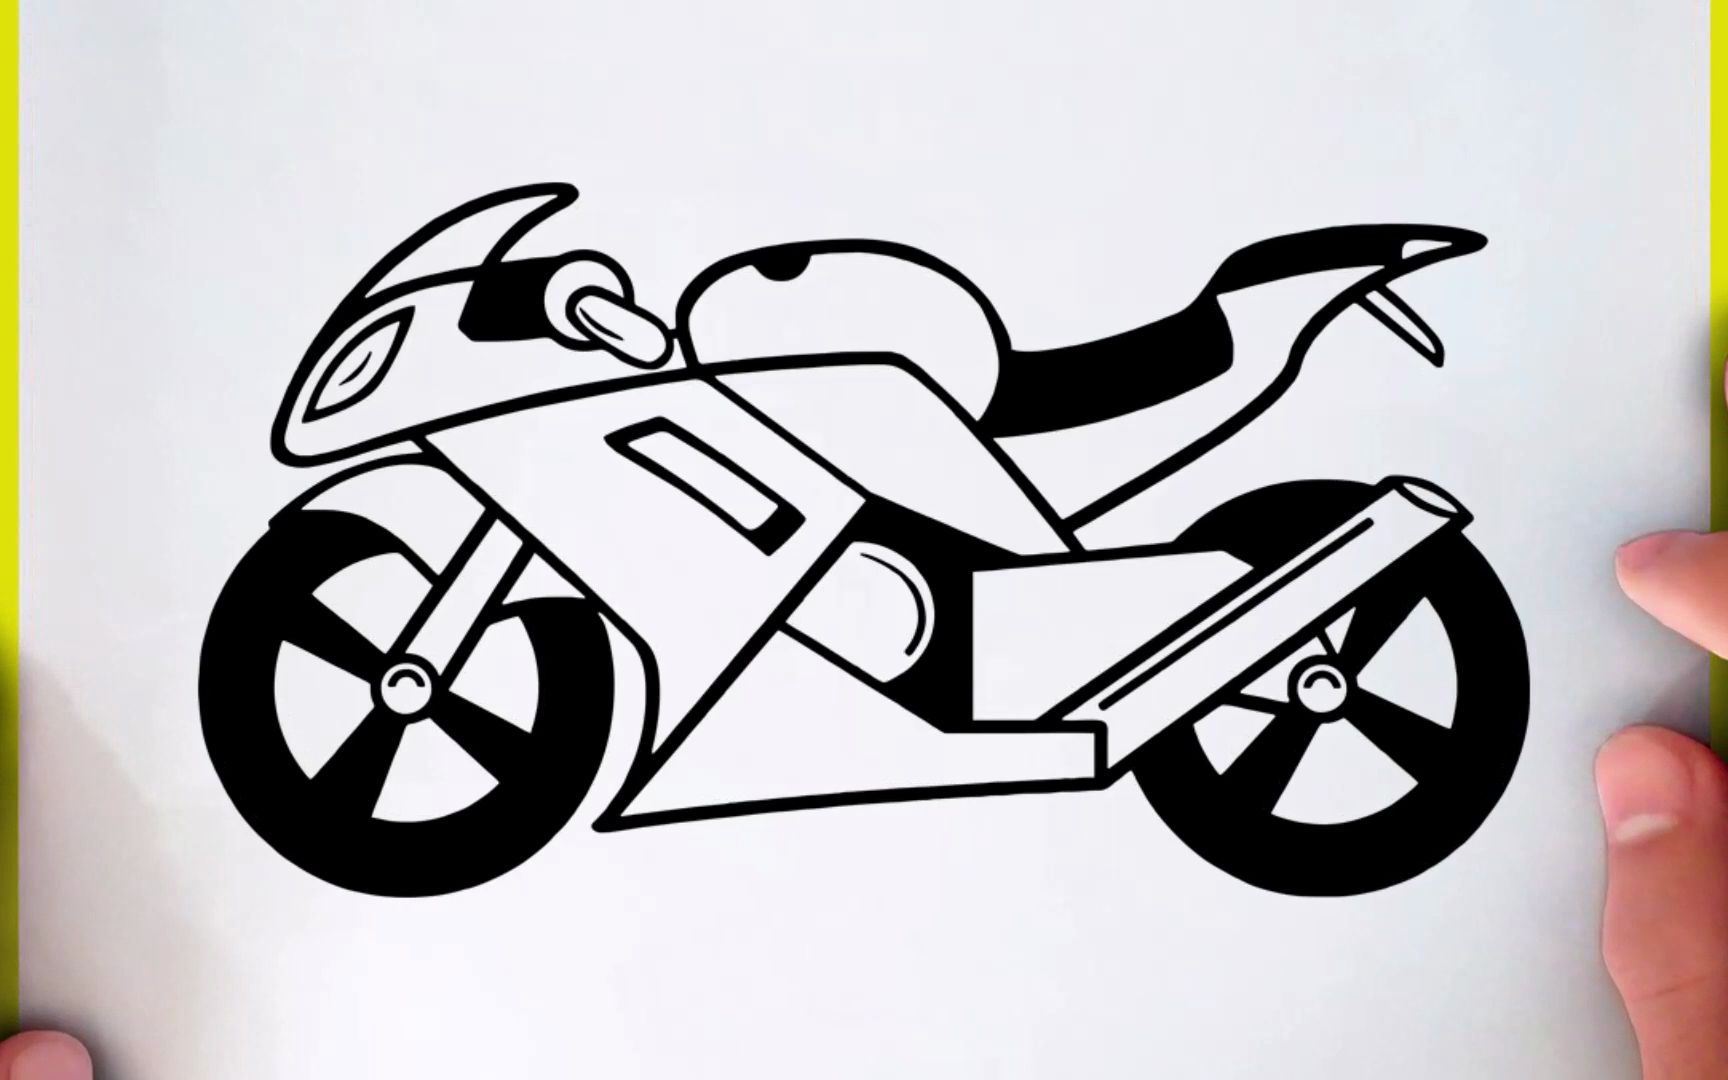 画摩托车图片